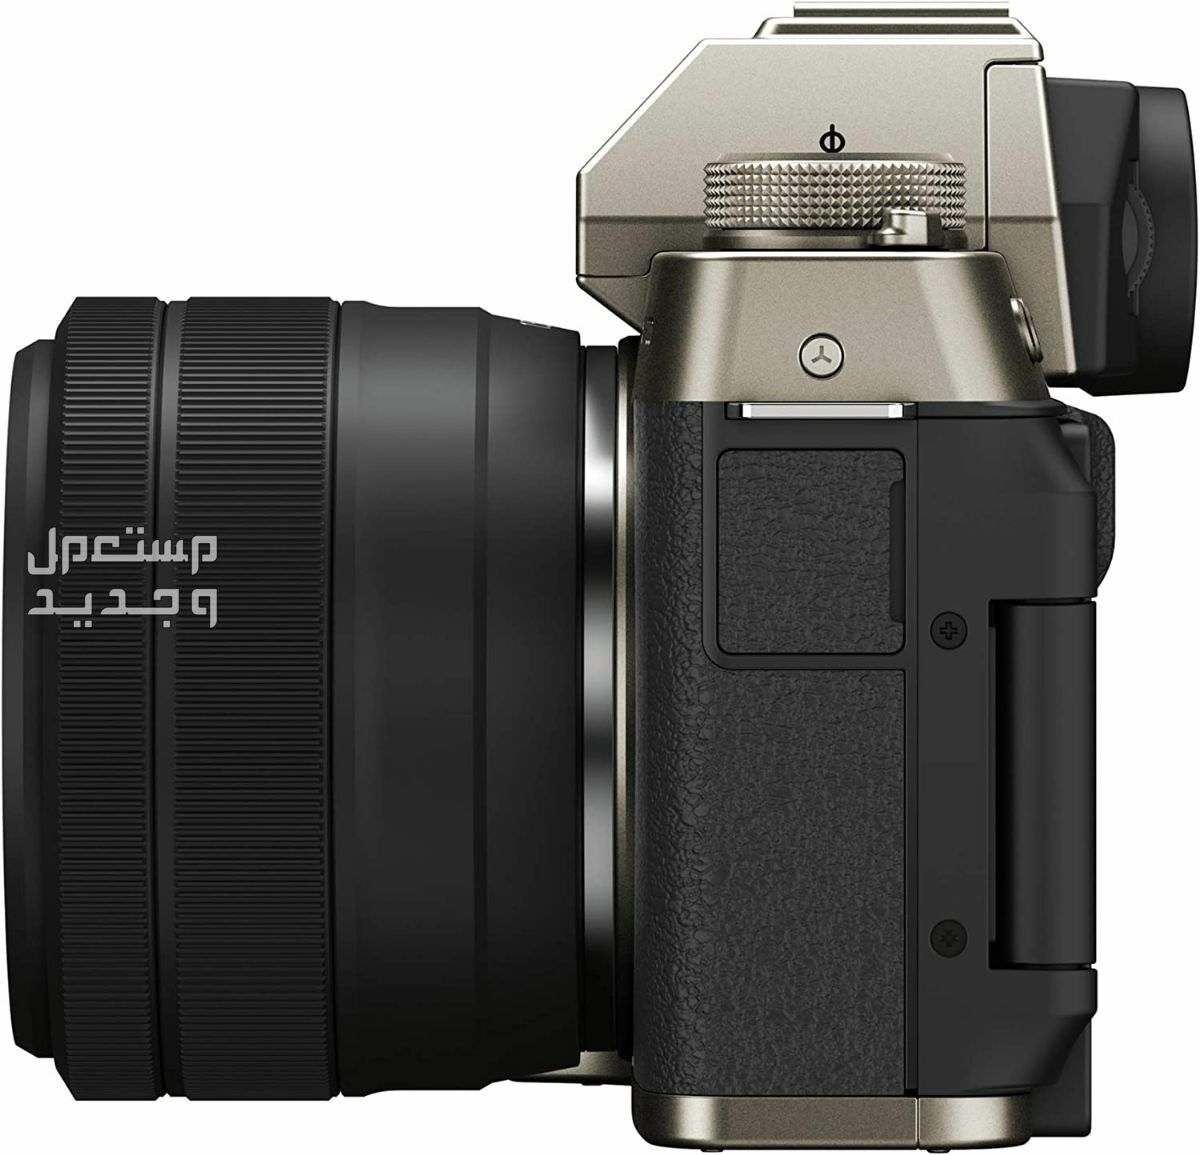 10 كاميرات تصوير ماركات عالمية بأسعار رخيصة في لبنان سعر كاميرا Fujifilm X-T200